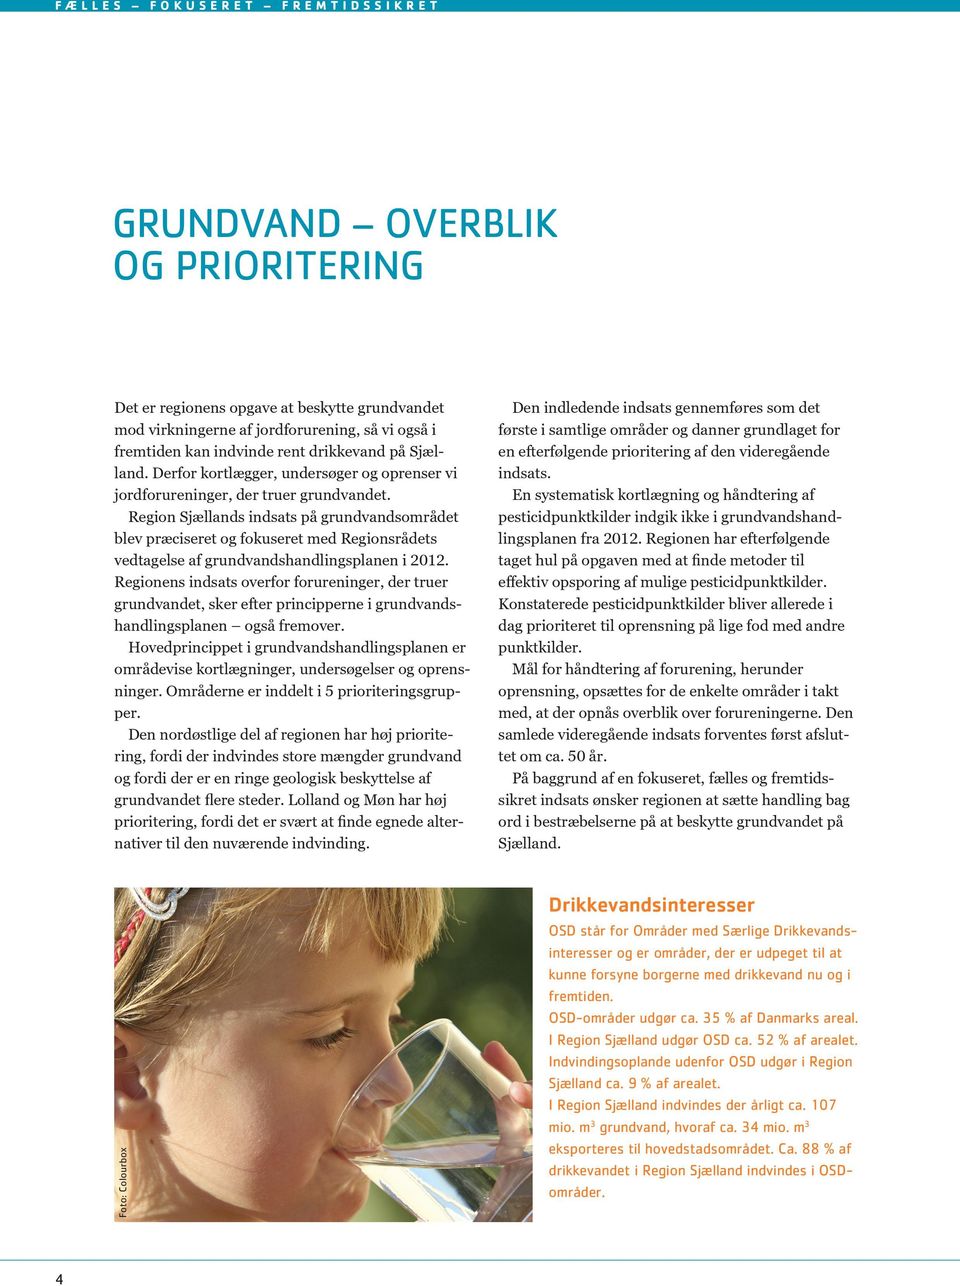 Region Sjællands indsats på grundvandsområdet blev præciseret og fokuseret med Regionsrådets vedtagelse af grundvandshandlingsplanen i 2012.